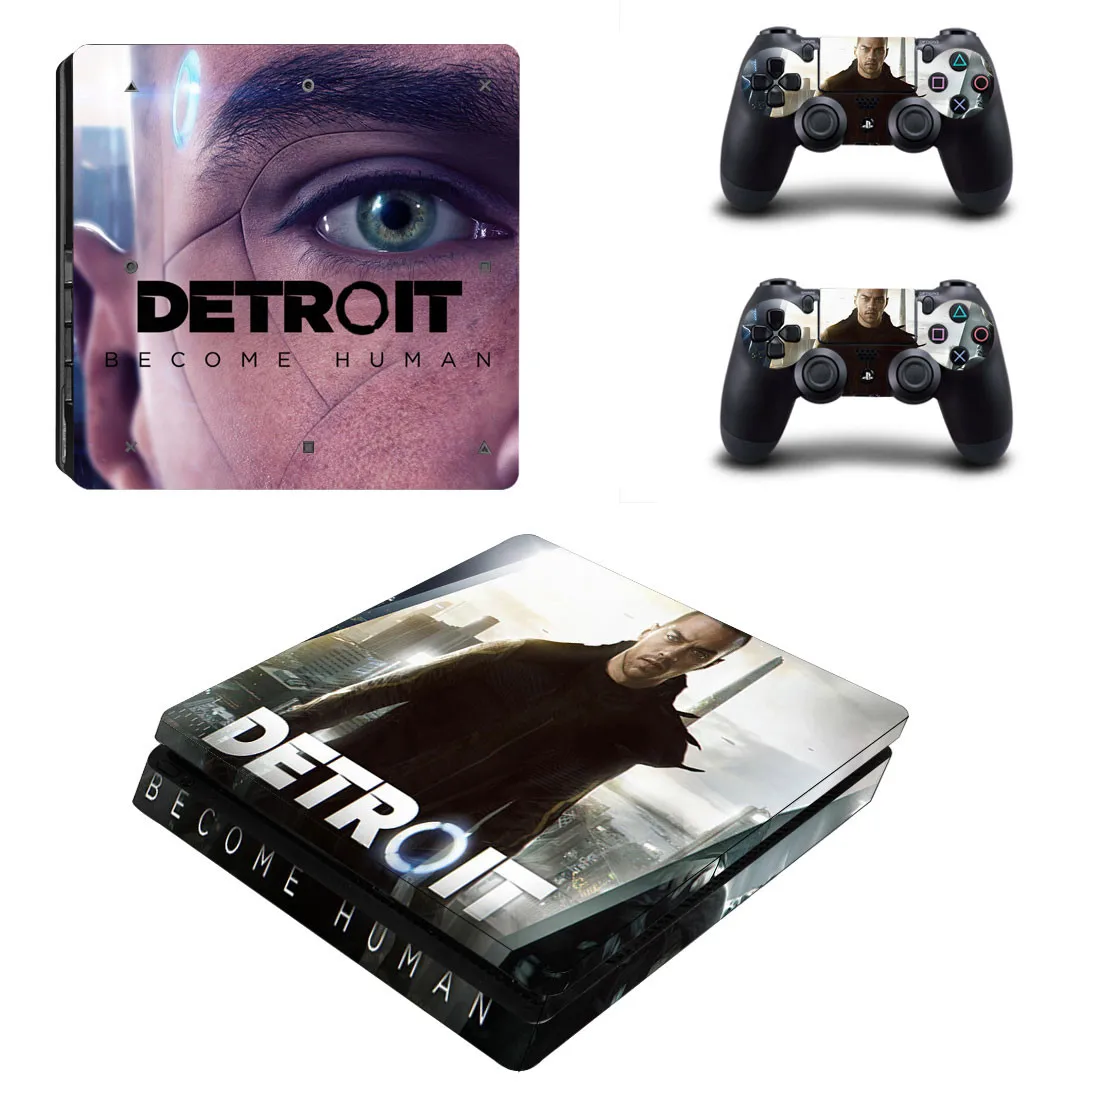 Detroit стать человеком PS4 Slim sticker s Play station 4 наклейки кожи наклейки для playstation 4 PS4 Slim консоль и контроллер кожи